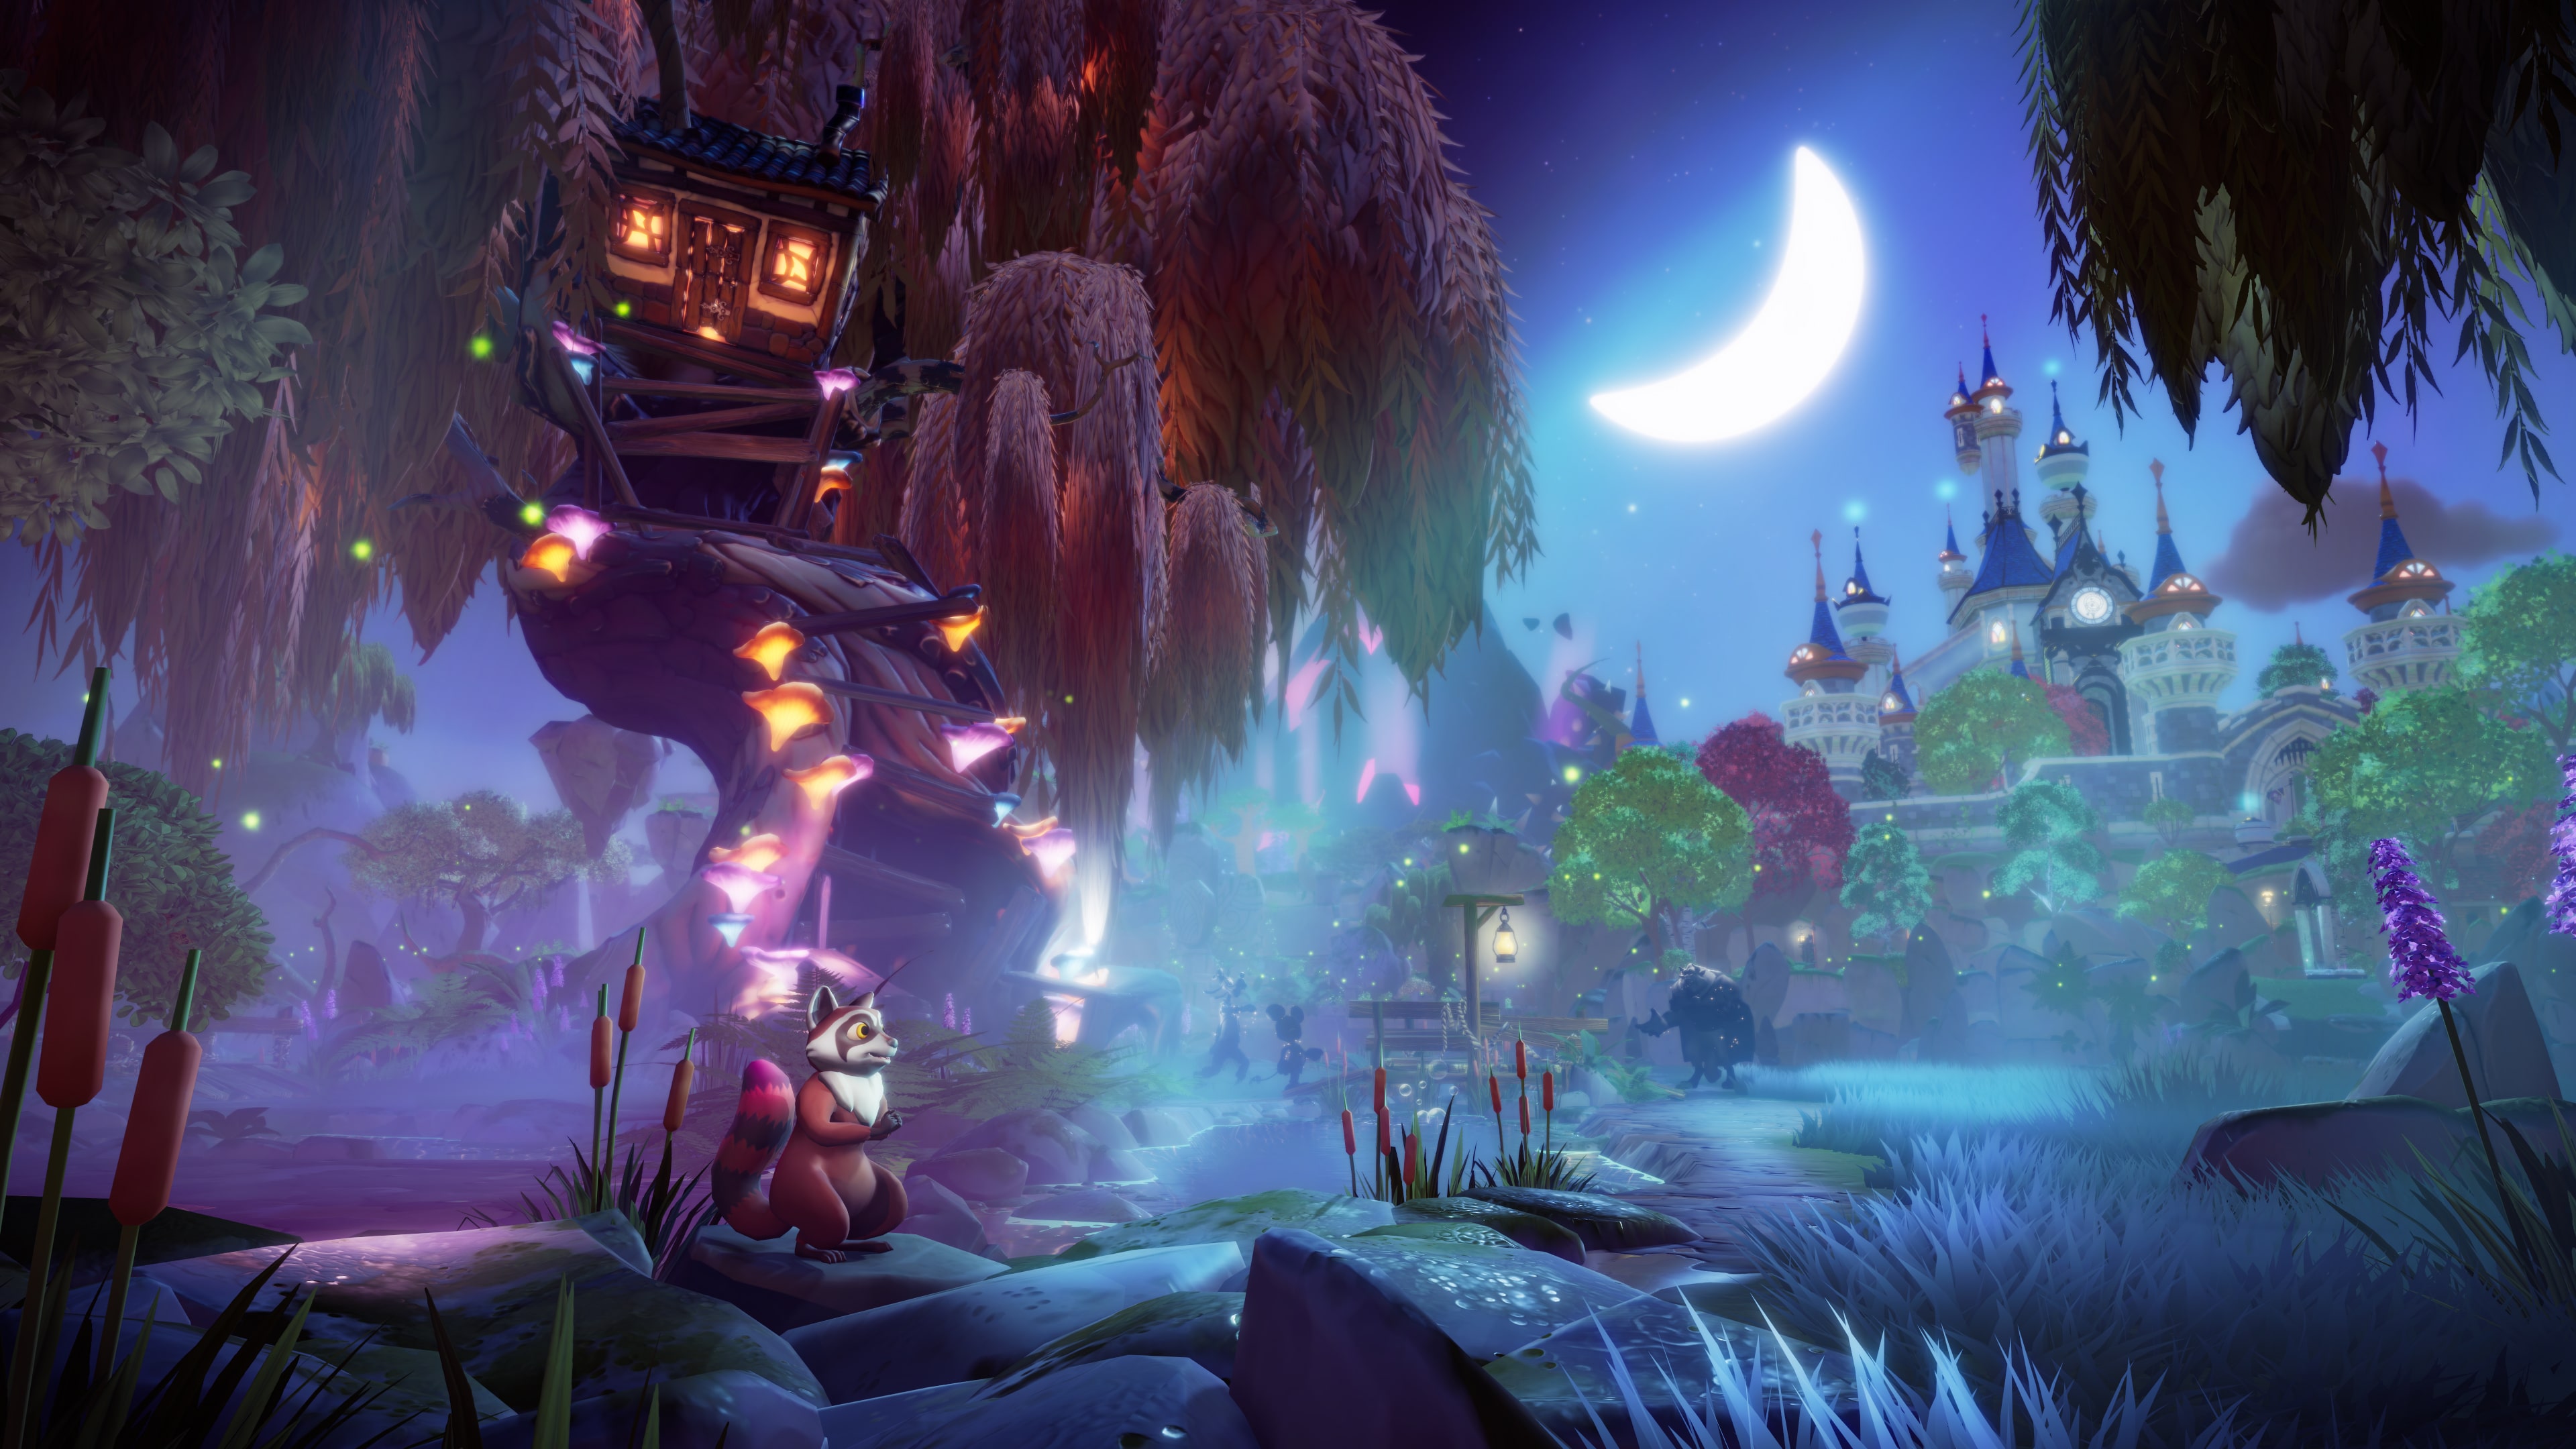 Disney Dreamlight Valley, novo simulador gratuito, é anunciado para PS4 e  PS5 - PSX Brasil